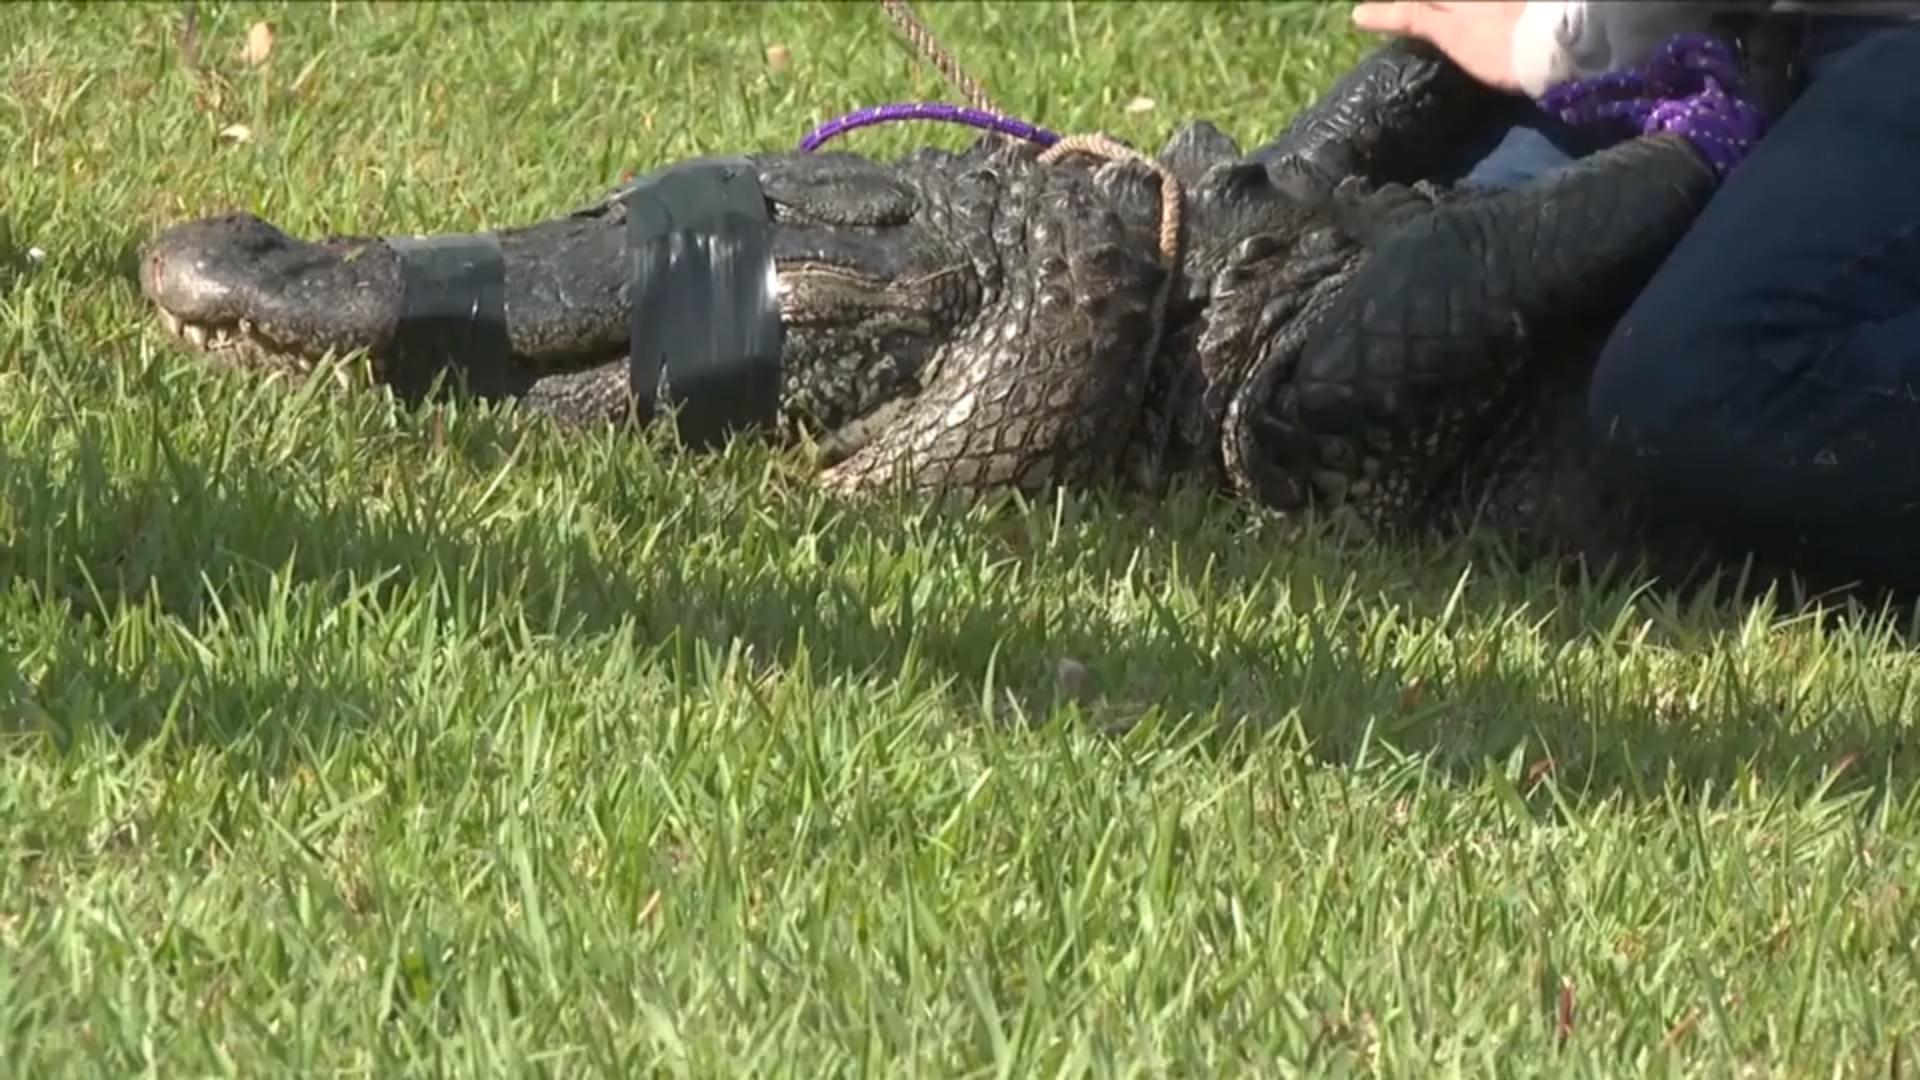 Frau (85) will Hund vor Alligator retten und wird getötet Keine Chance für Rentnerin